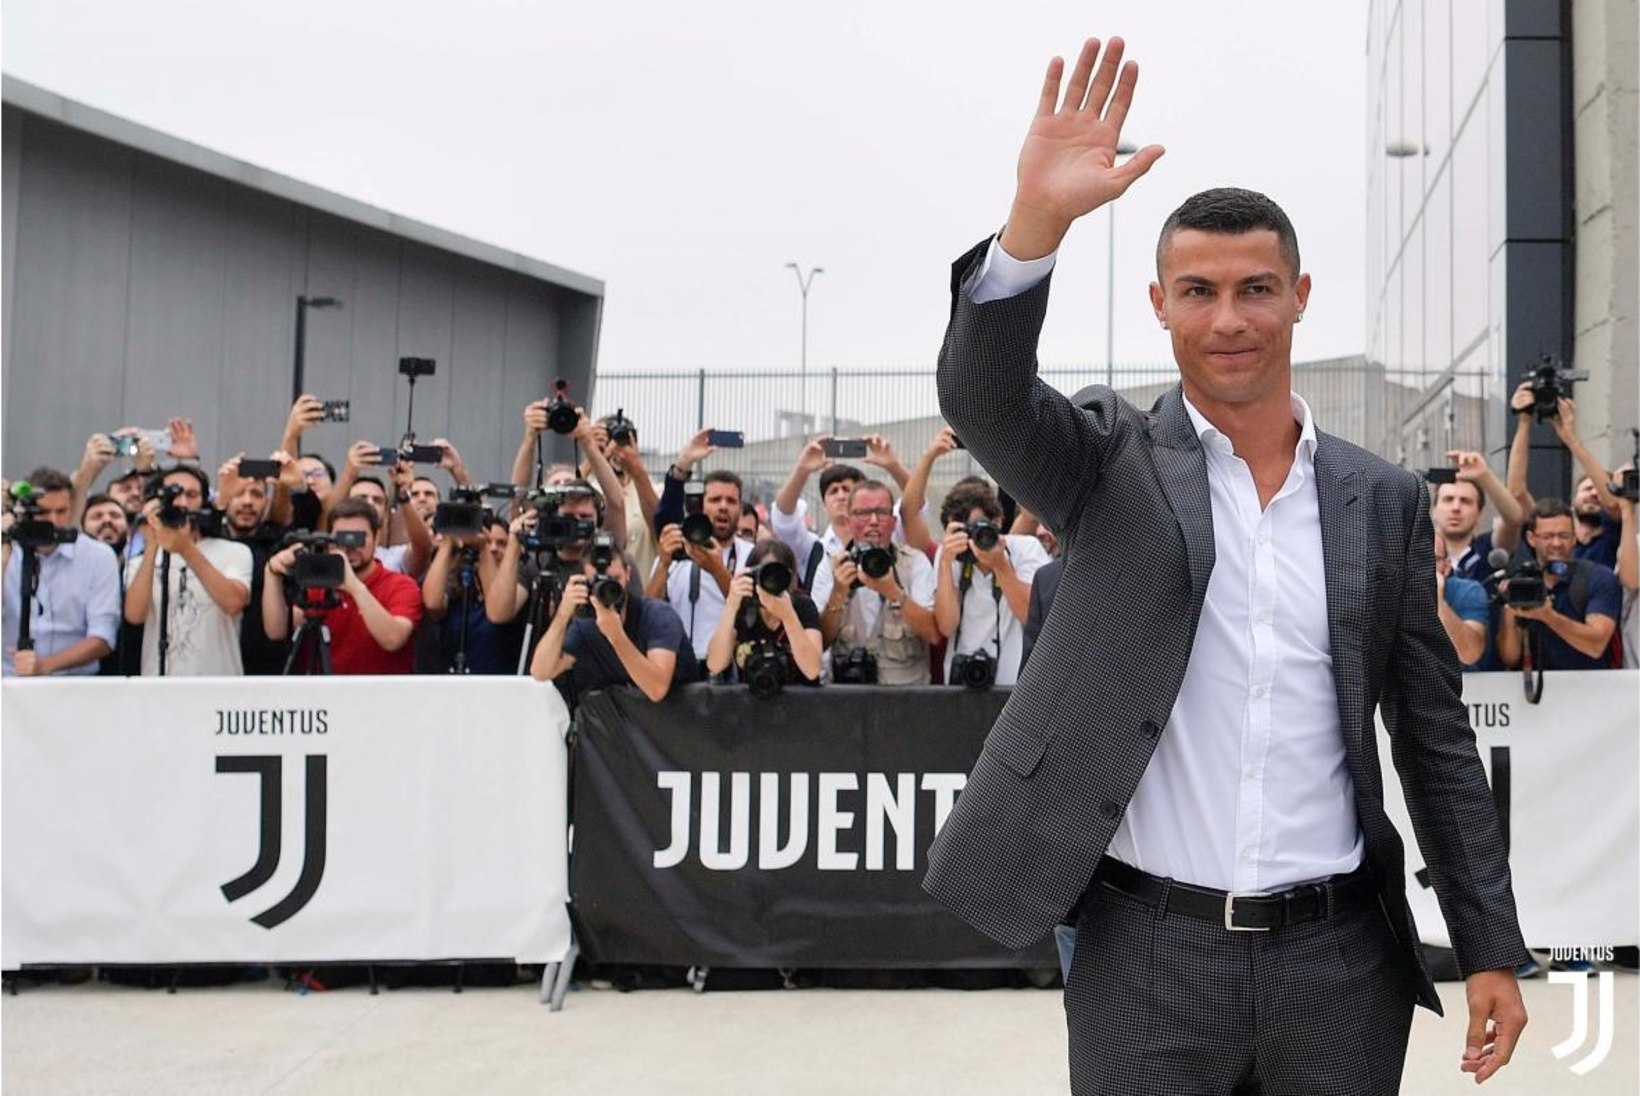 NII SEE JUHTUS | Sport 16.07: Cristiano Ronaldo jõudis Itaaliasse, MMi kangelased kodumaale